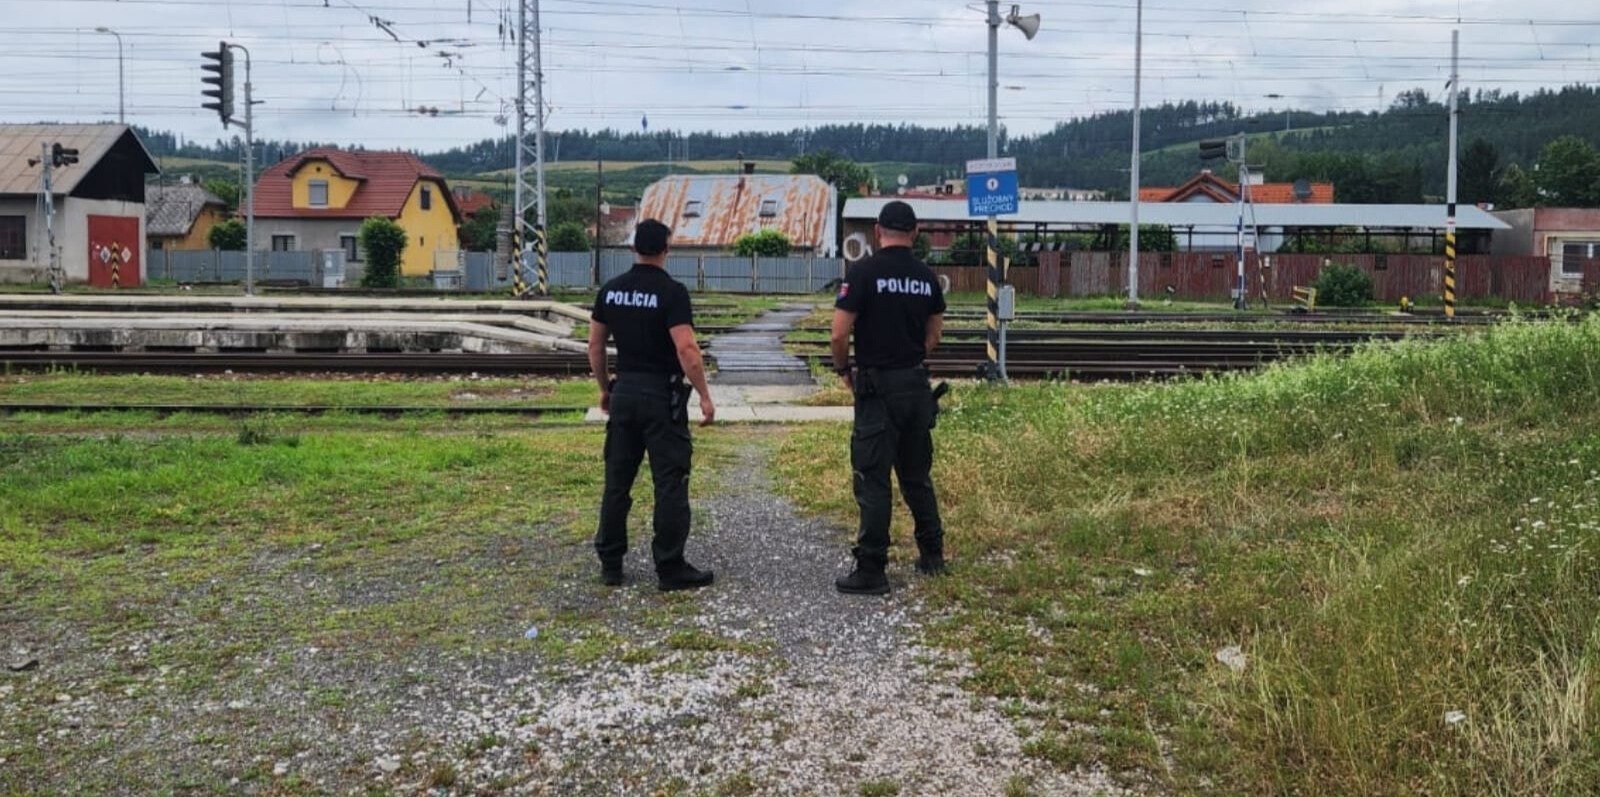 Policajná akcia ,,Aktívny štít“ odhalila na území Košického kraja 15 priestupkov (Foto)